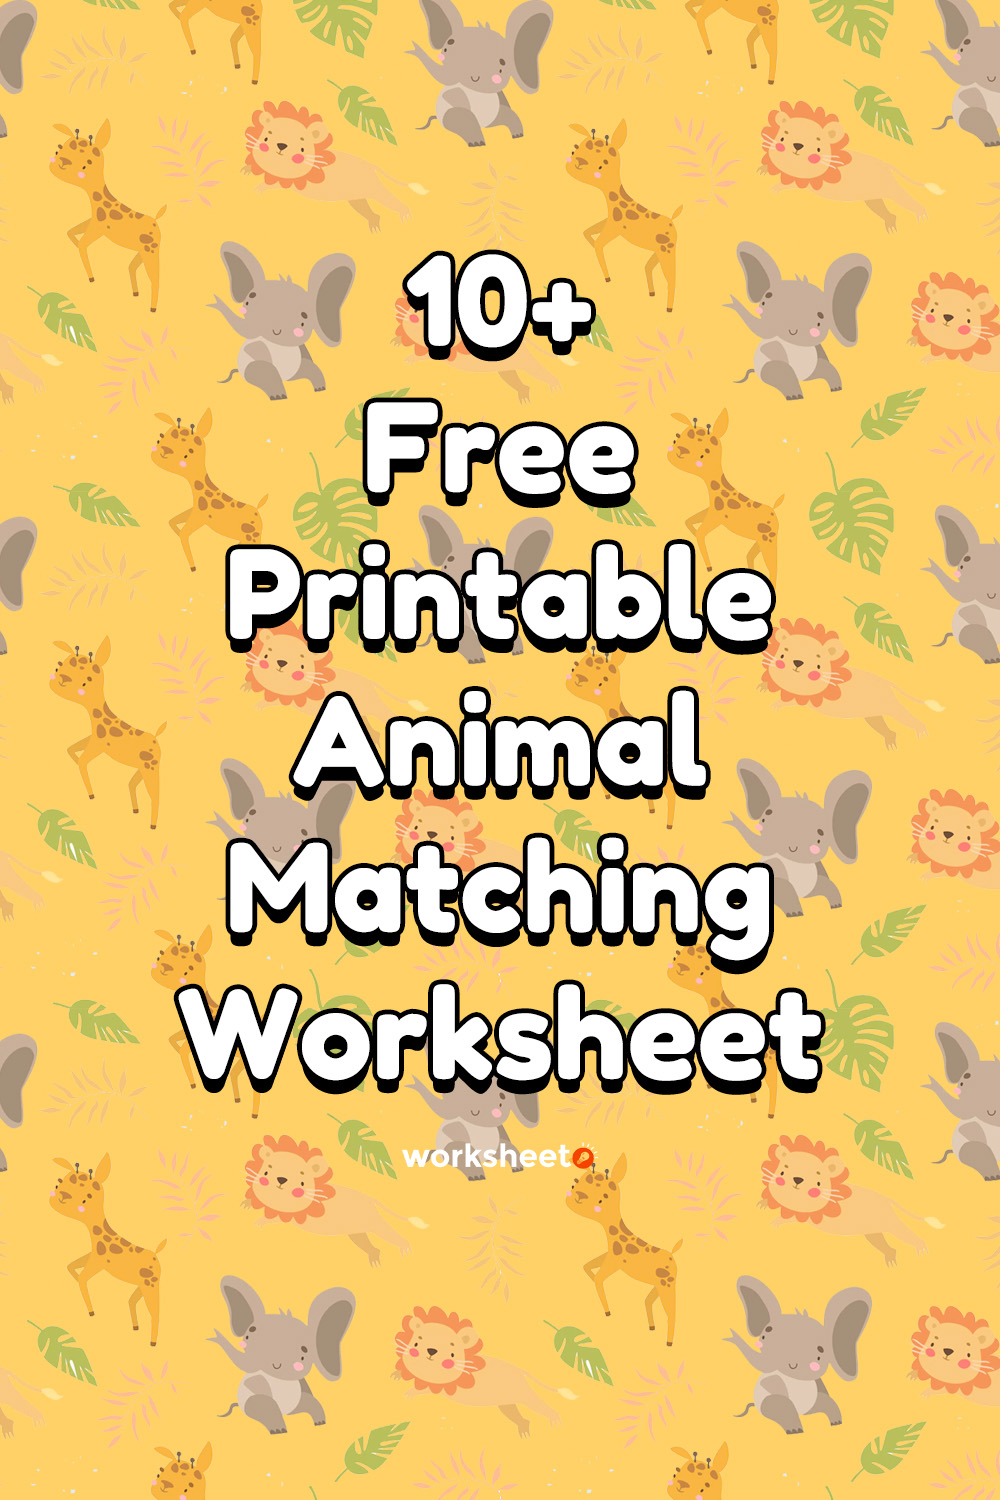 Free Printable Animal Matching Worksheet